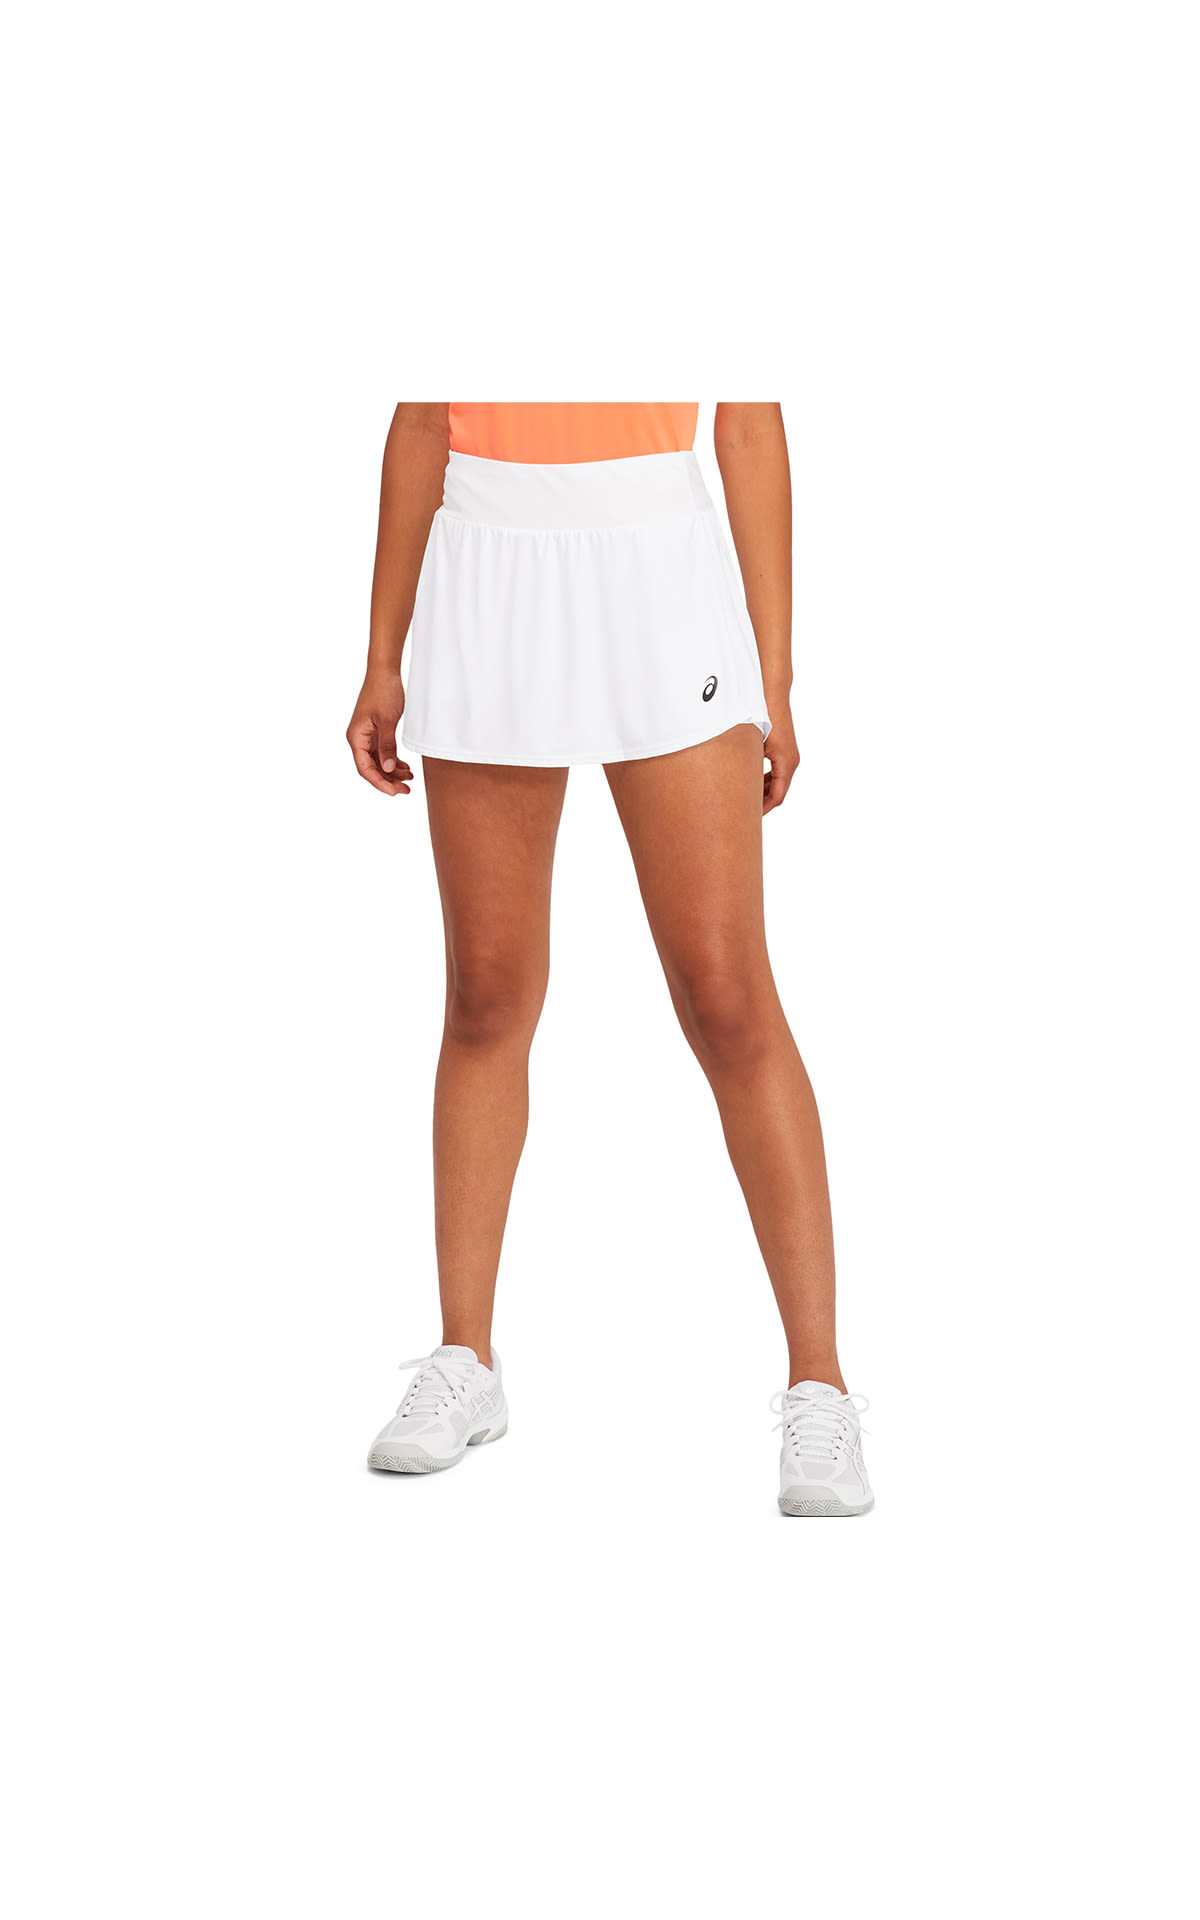 White or black tennis skirt